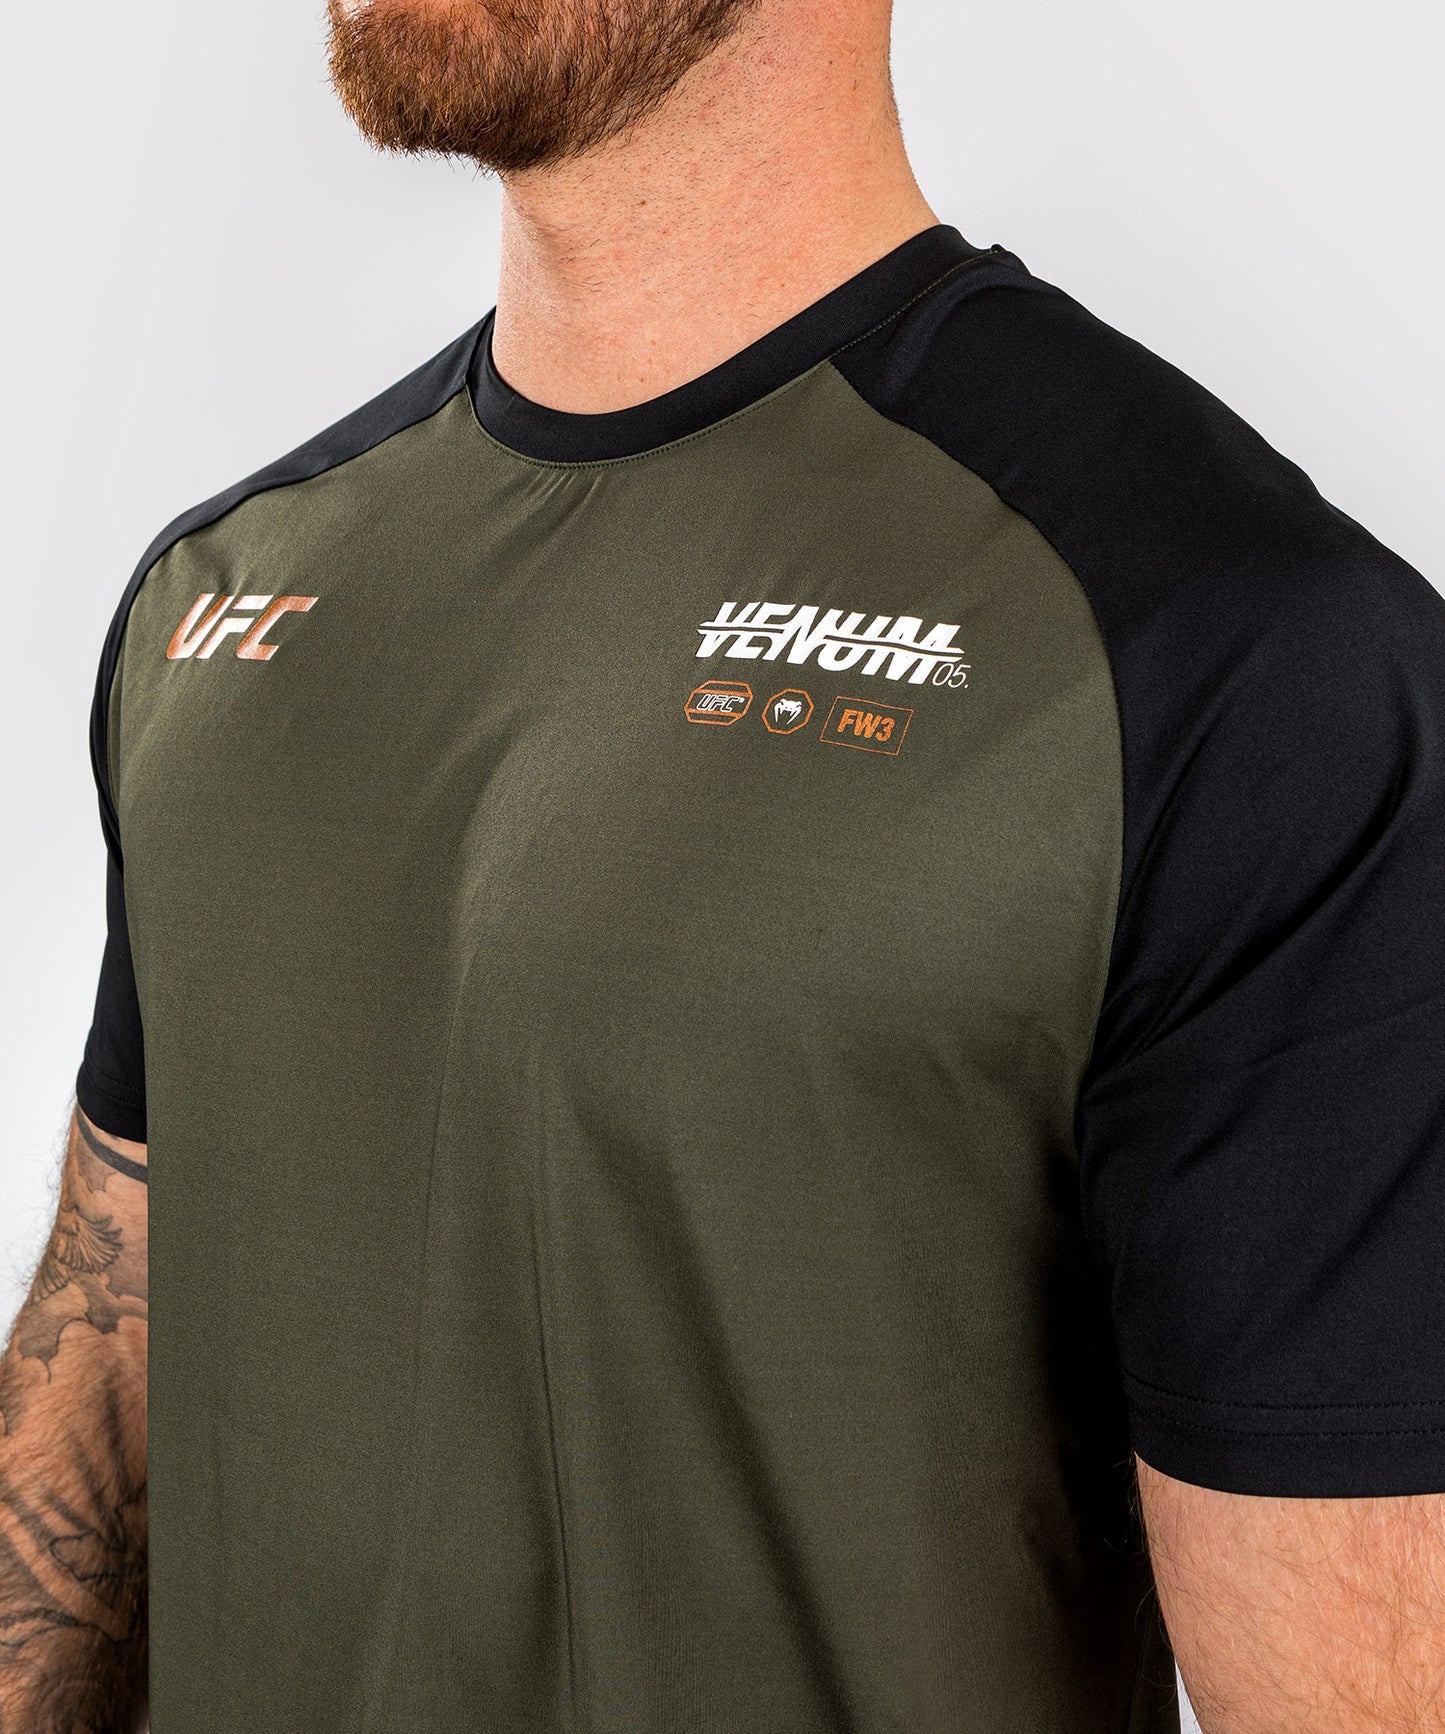 T-shirt Technique pour Hommes UFC Adrenaline by Venum Authentic Fight Night  - Emerald Edition - Vert/Noir